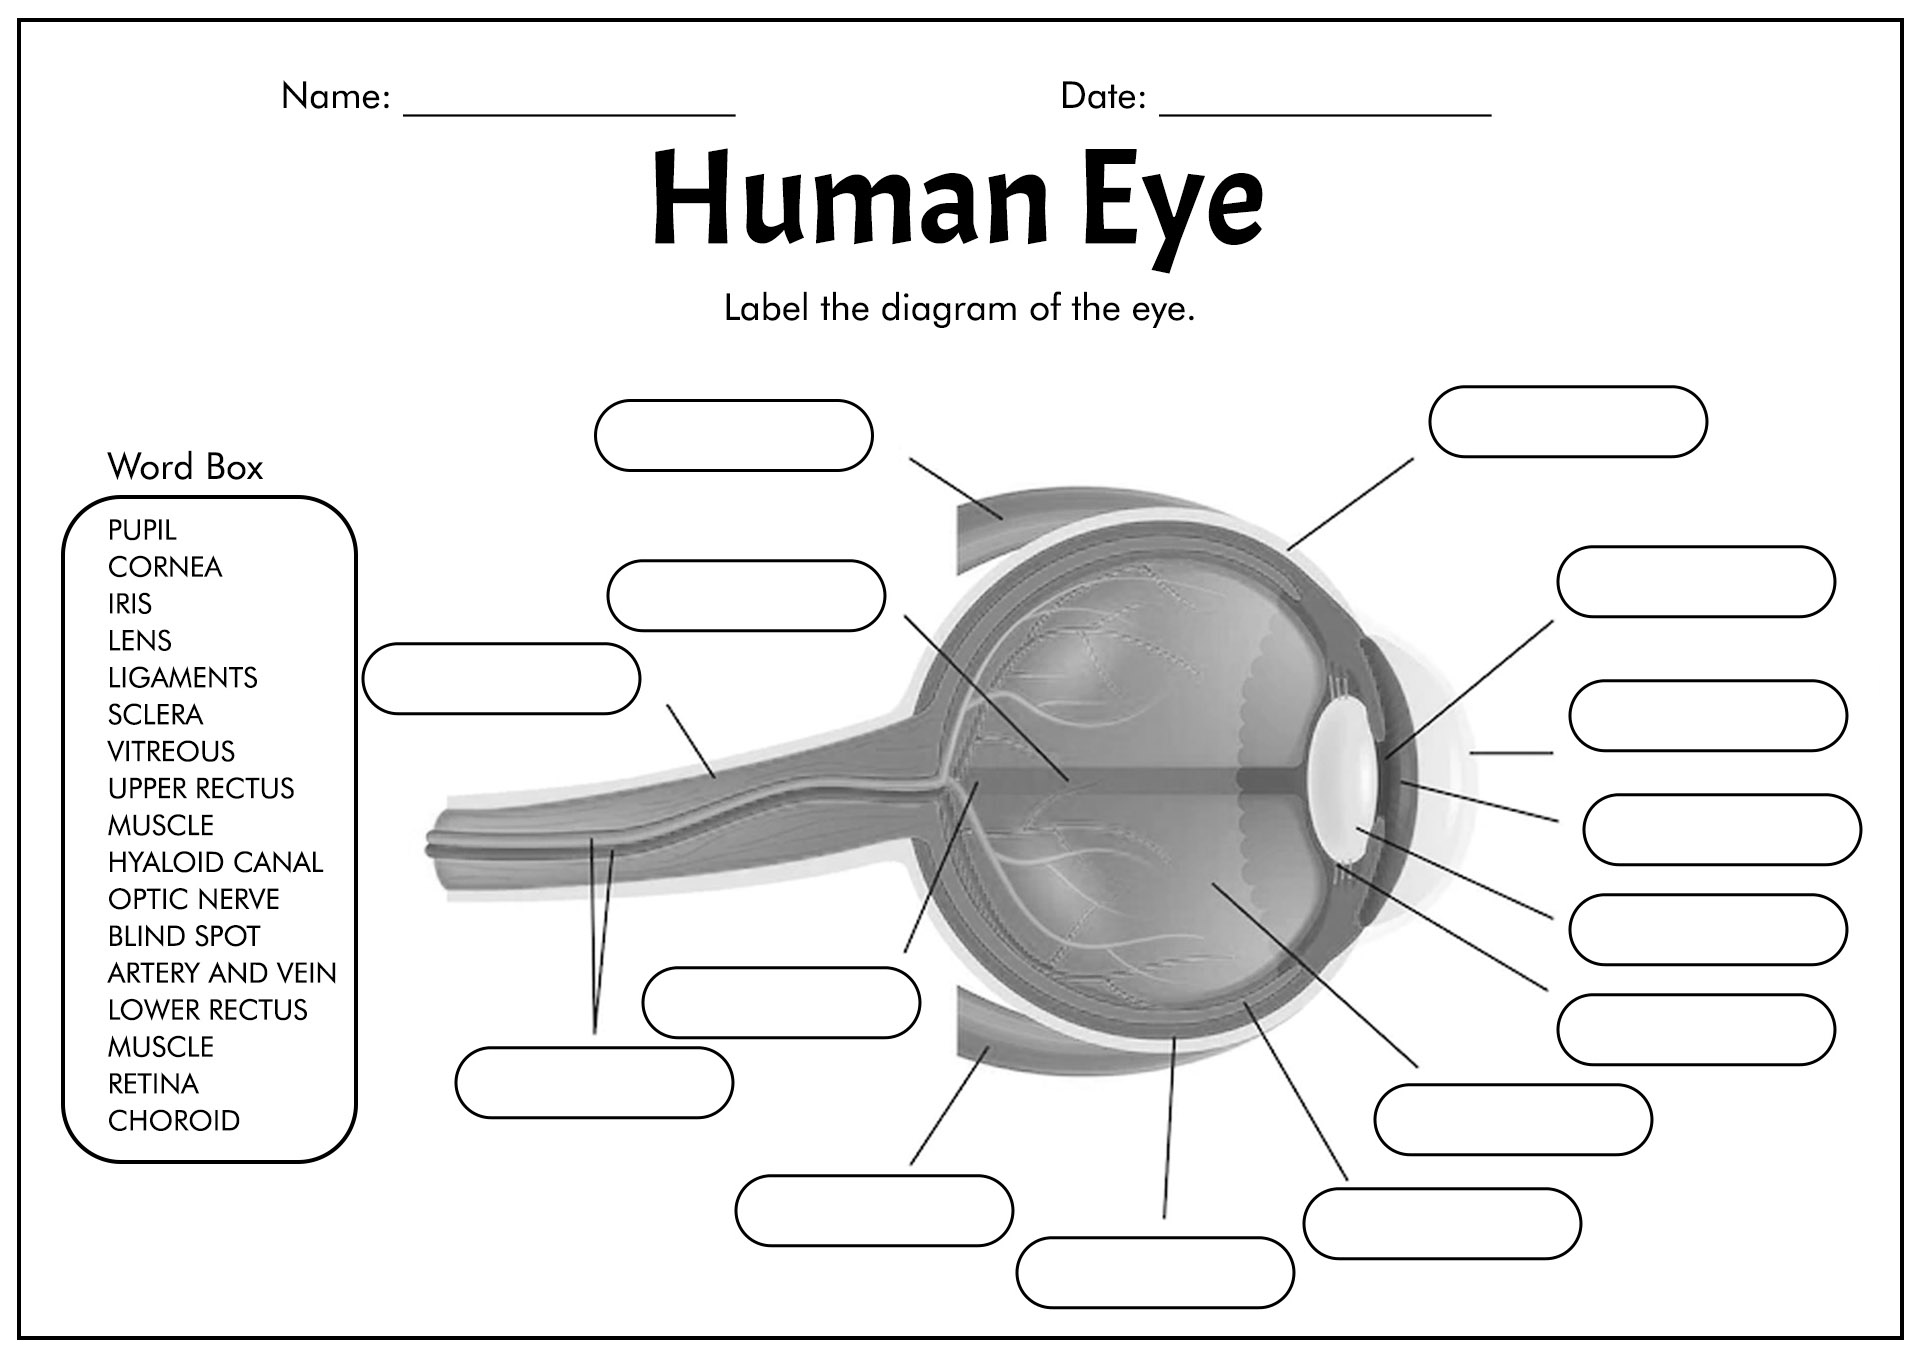 Human Eye Anatomy Diagram Worksheet